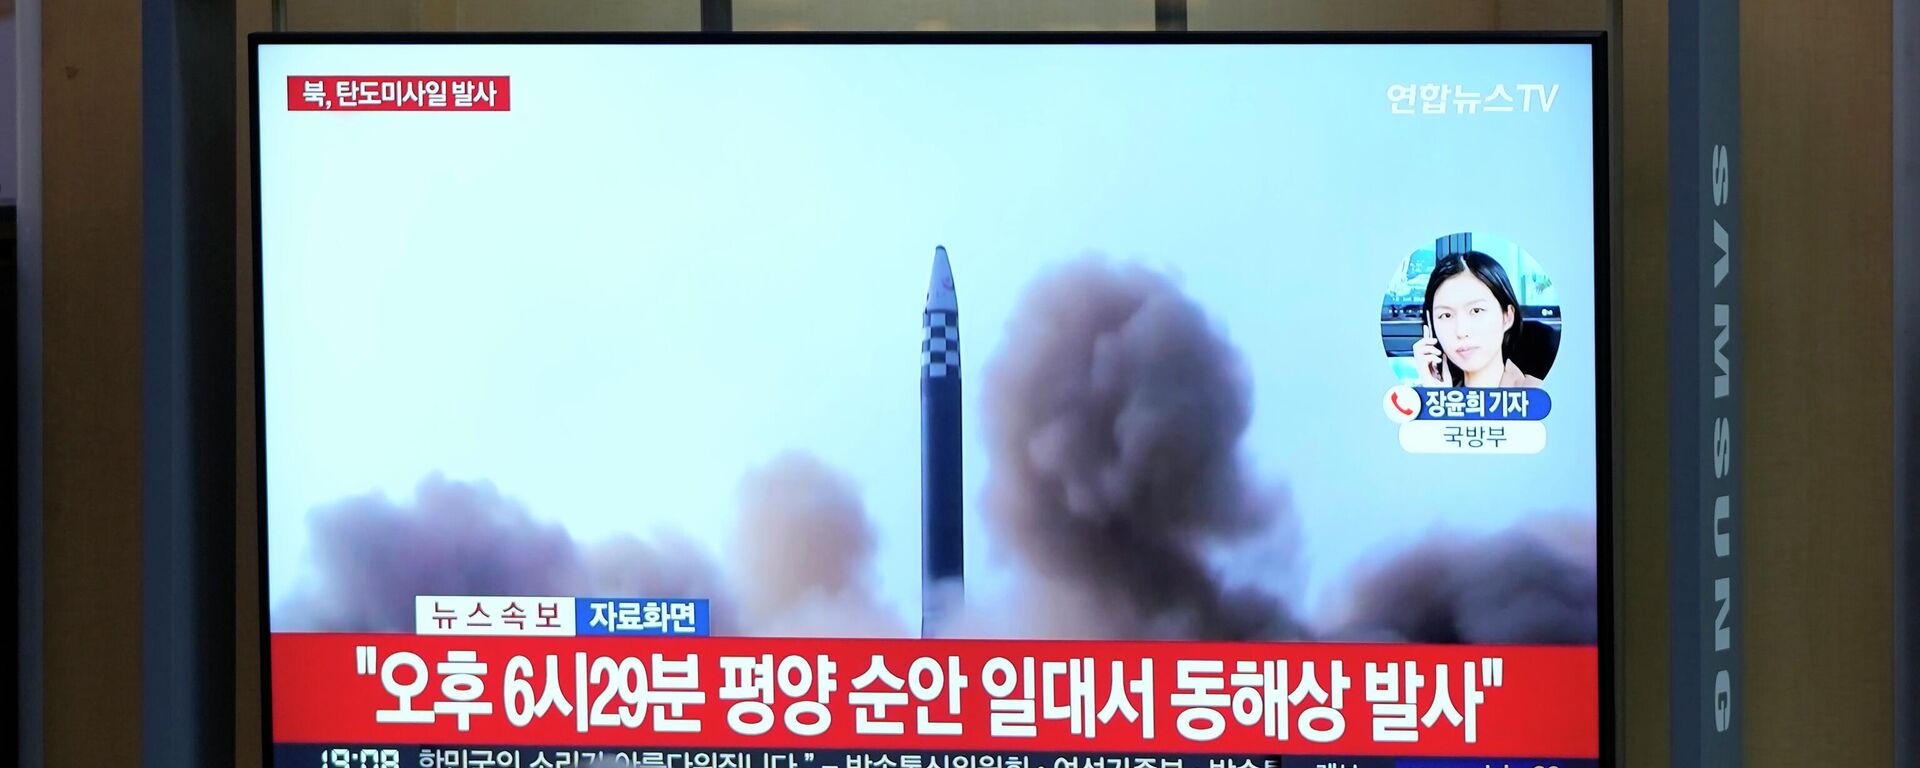 El lanzamiento de prueba de misil en Corea del Norte - Sputnik Mundo, 1920, 07.06.2022